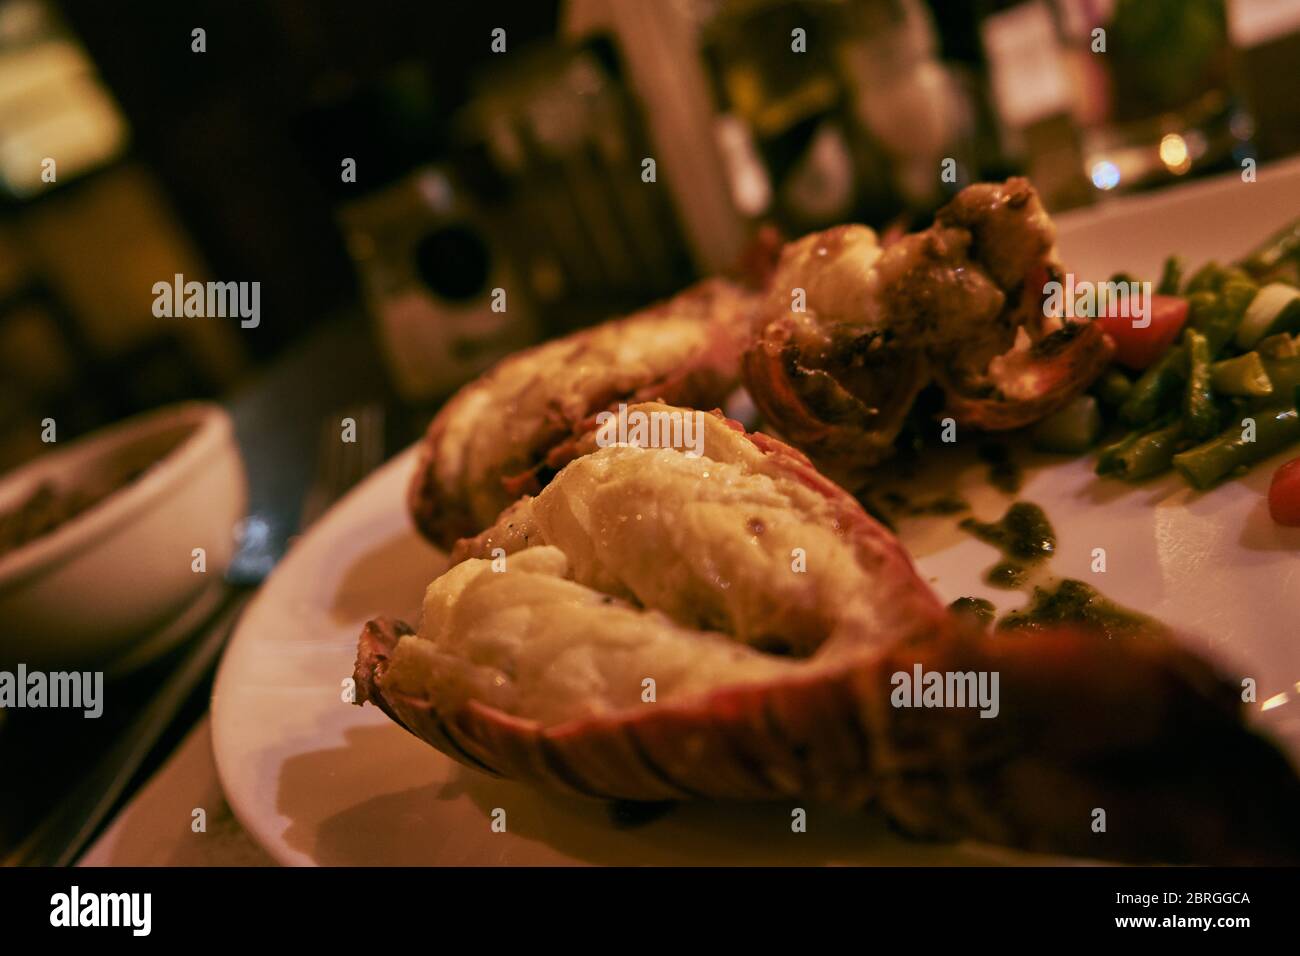 Lobster from Caribe, Havana Stock Photo